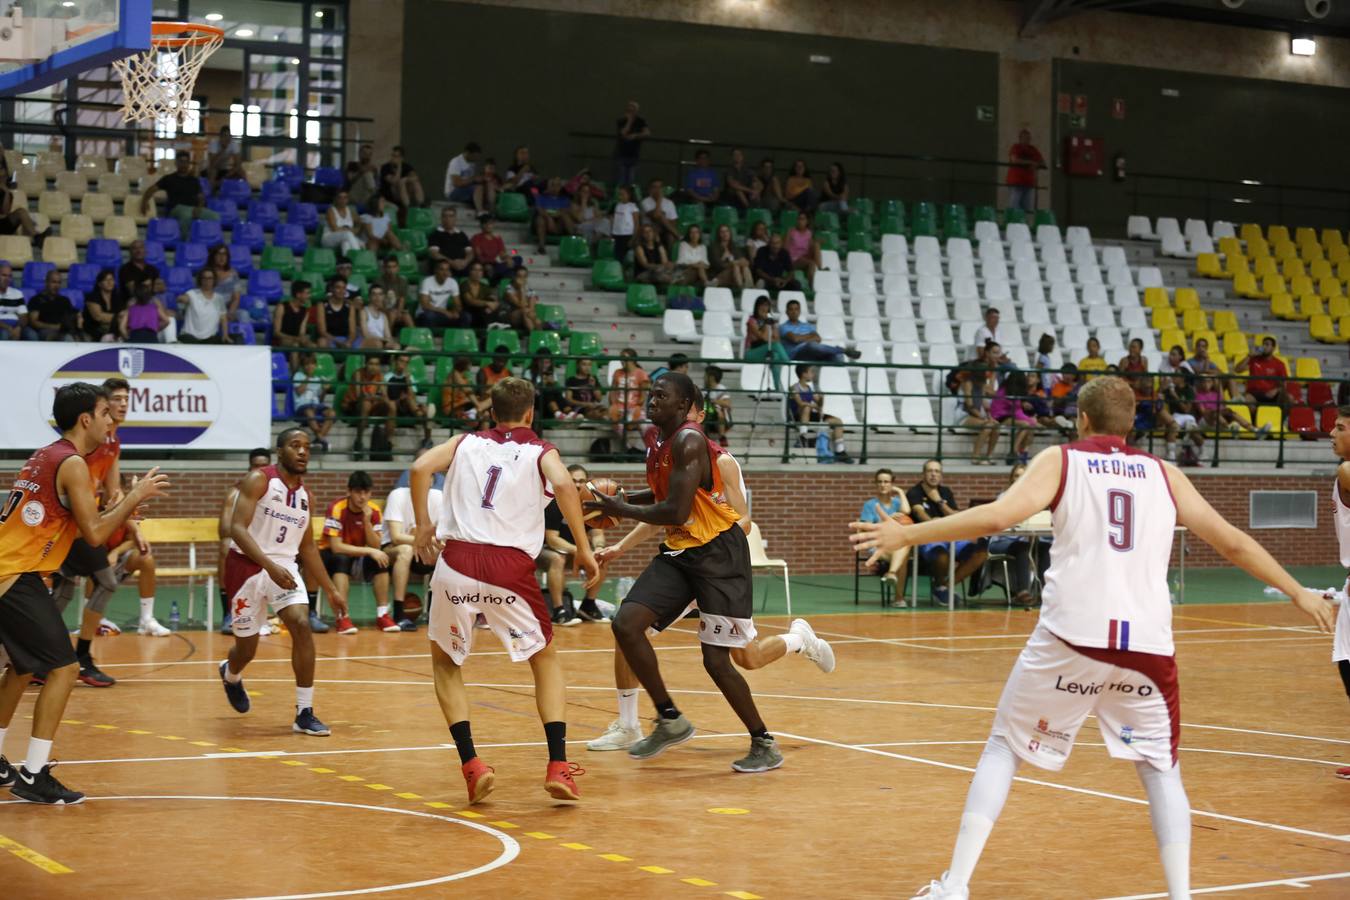 El equipo salmantino se impone en un igualado encuentro al Agustinos Eras de León (79-73)